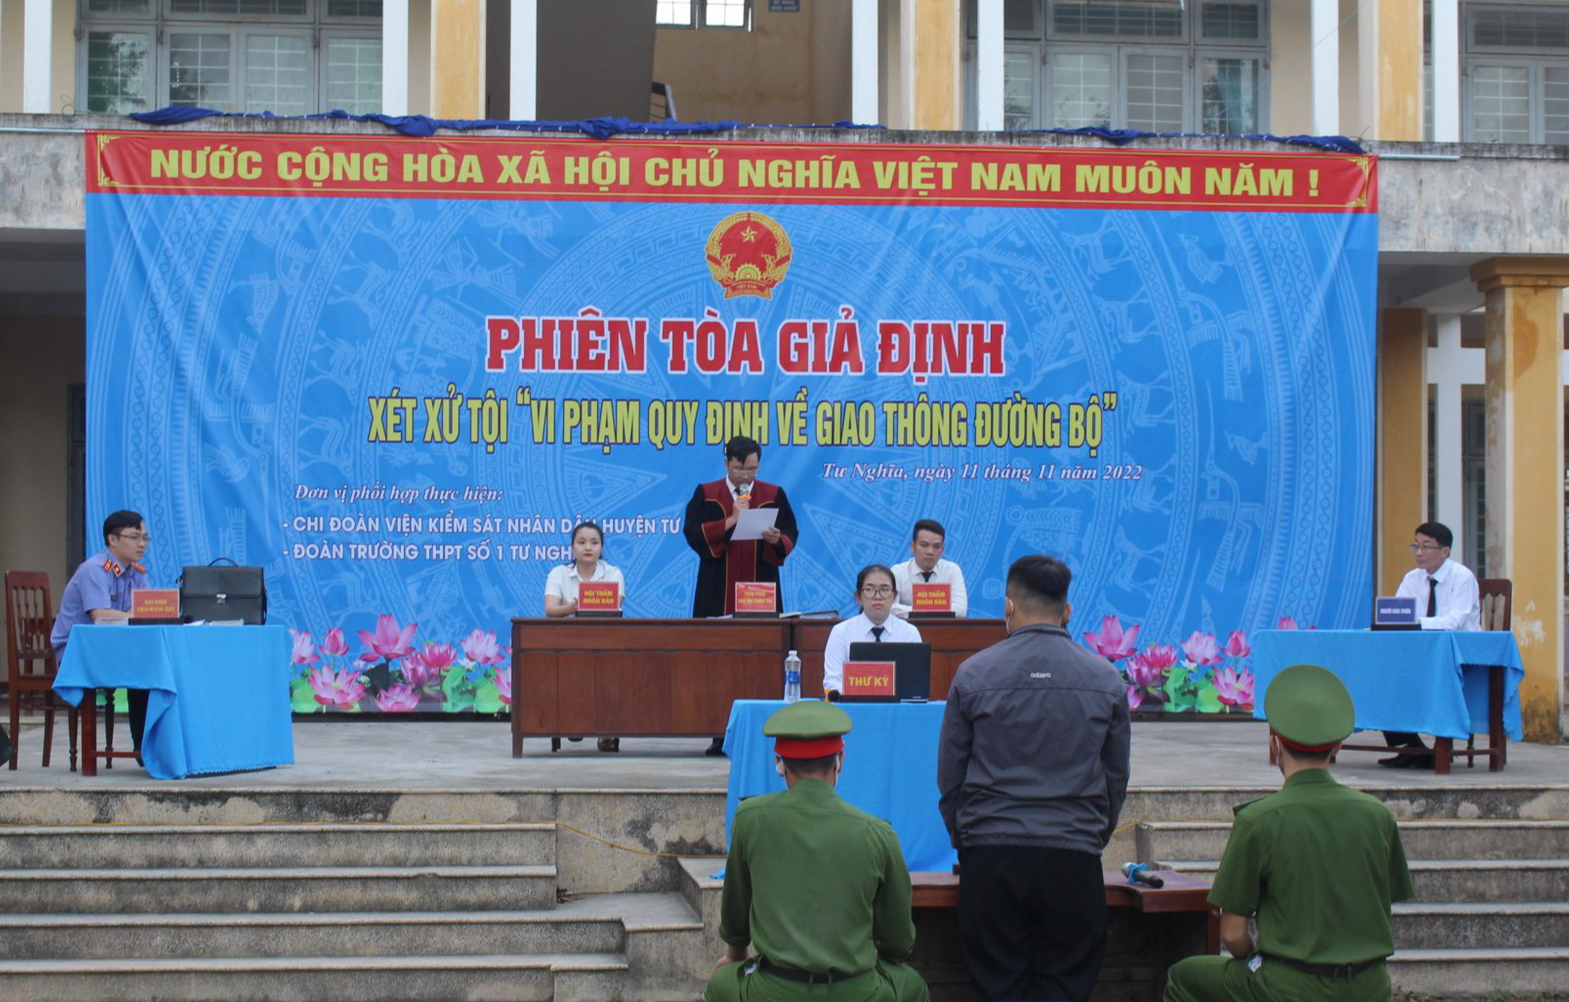 Giáo dục pháp luật ATGT cho học sinh qua phiên tòa giả định ở Quảng Ngãi - Ảnh 2.